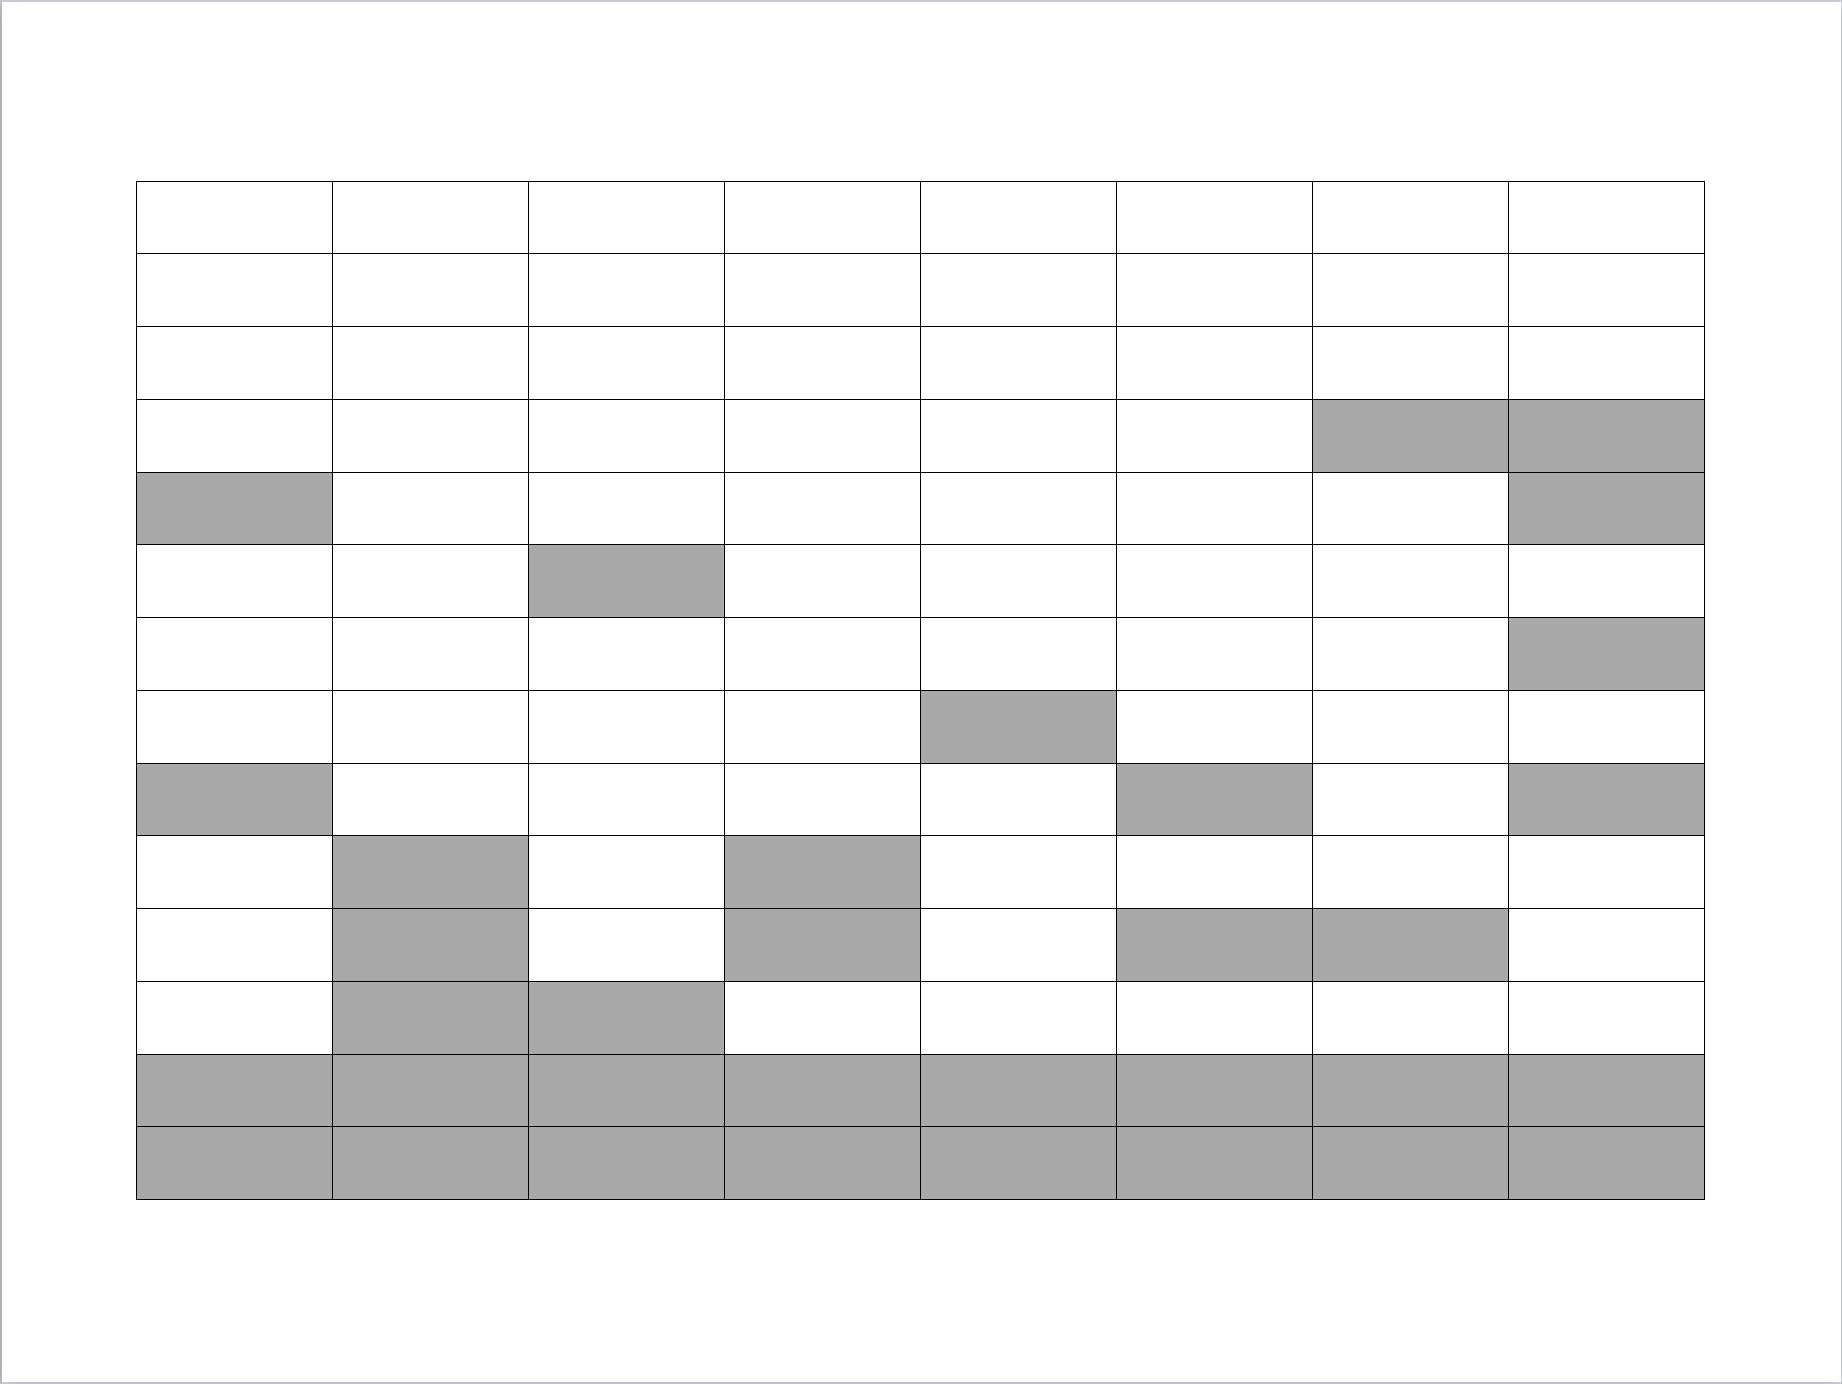 Imputación total: todas las unidades que no respondieron son imputadas (las celdas en gris indican los valores que fueron imputados).